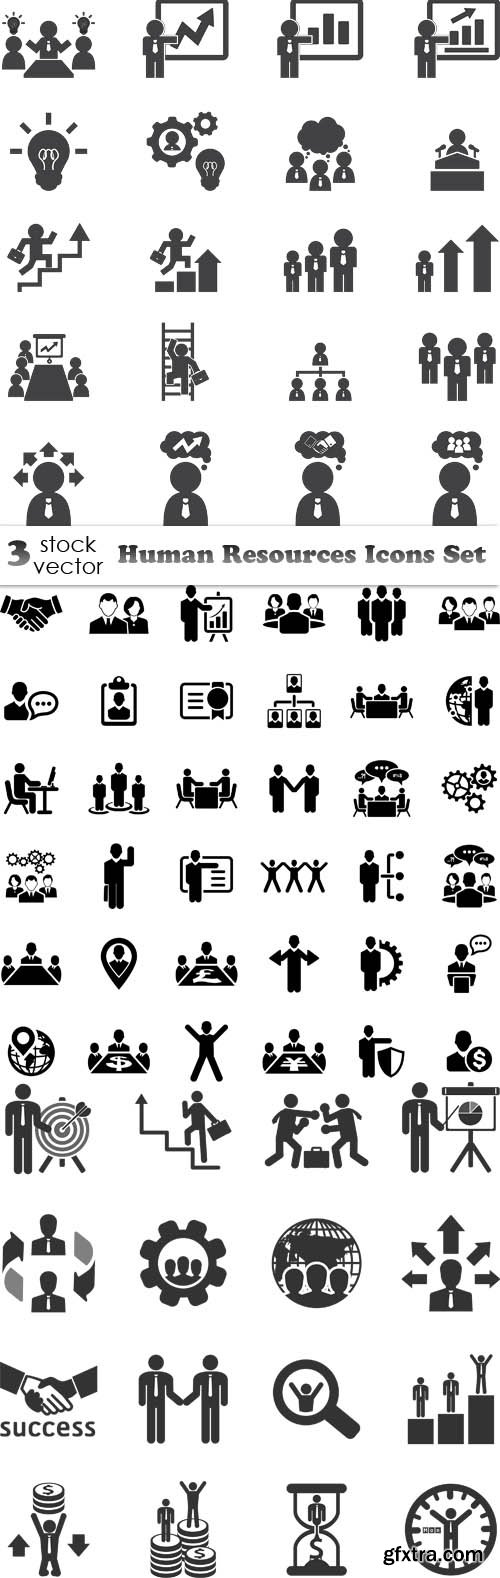 Vectors - Human Resources Icons Set